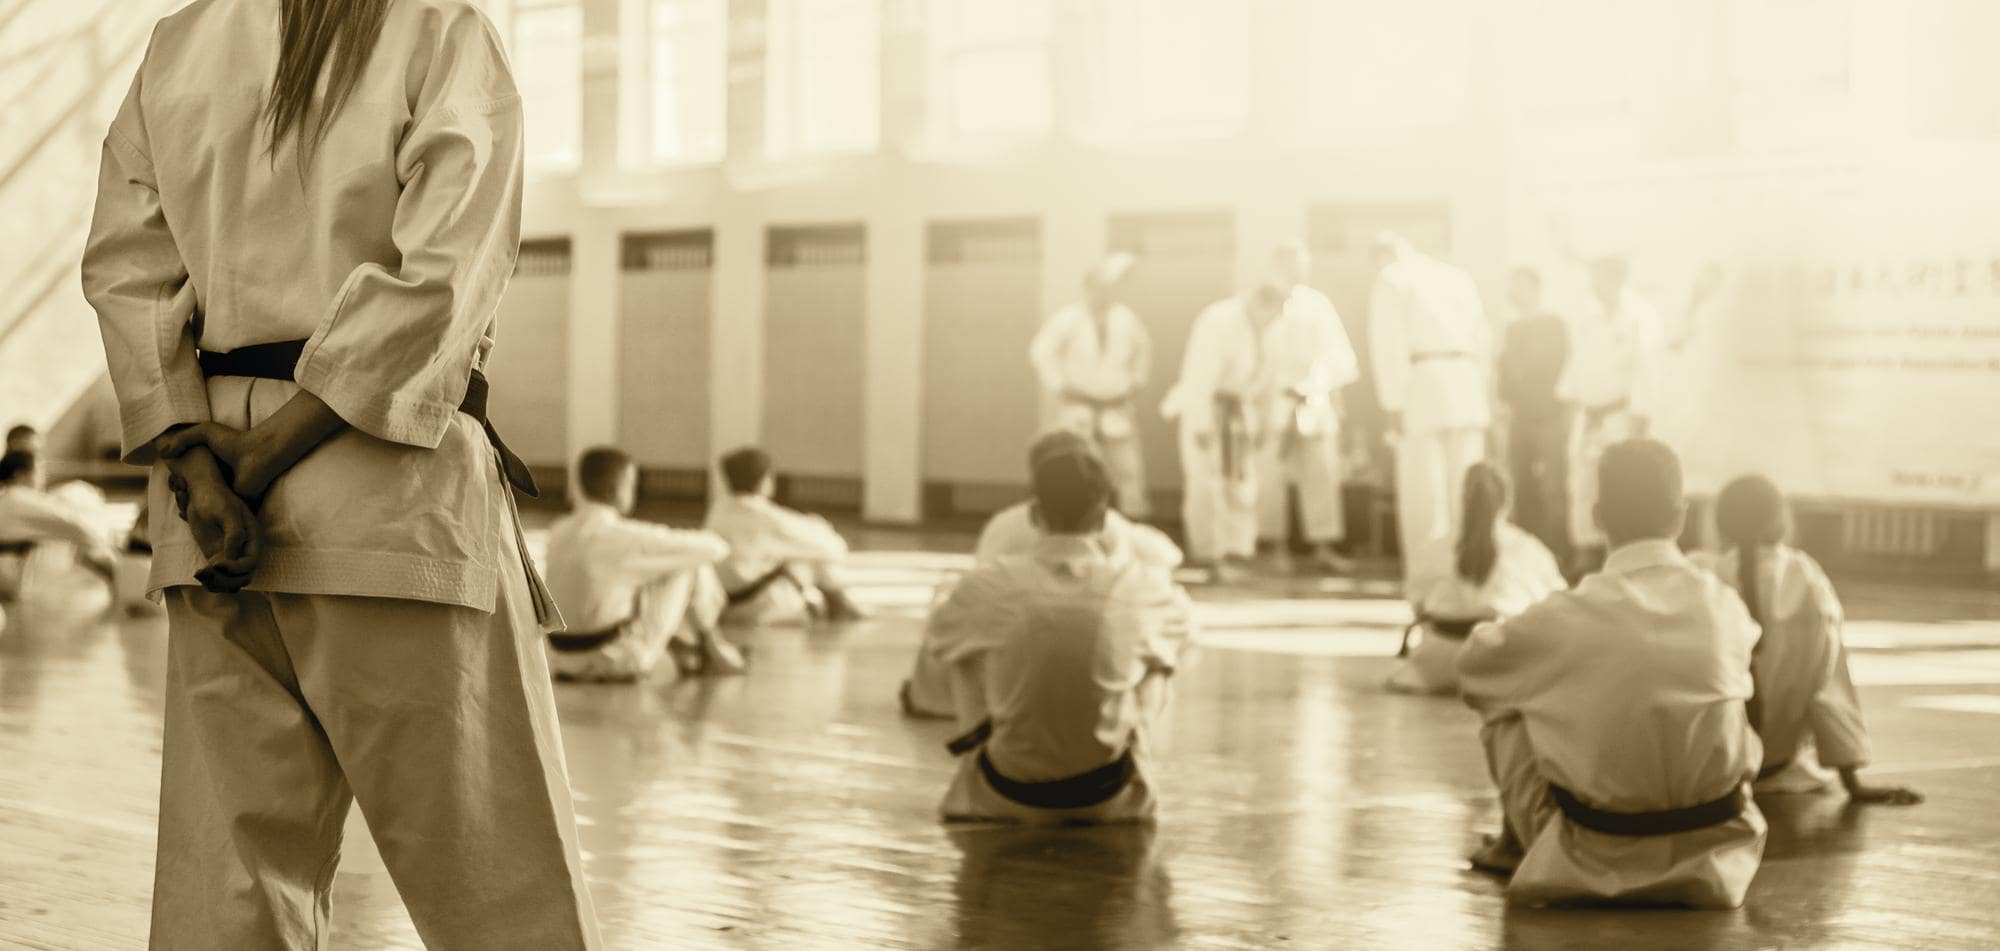 تاریخچه کاراته